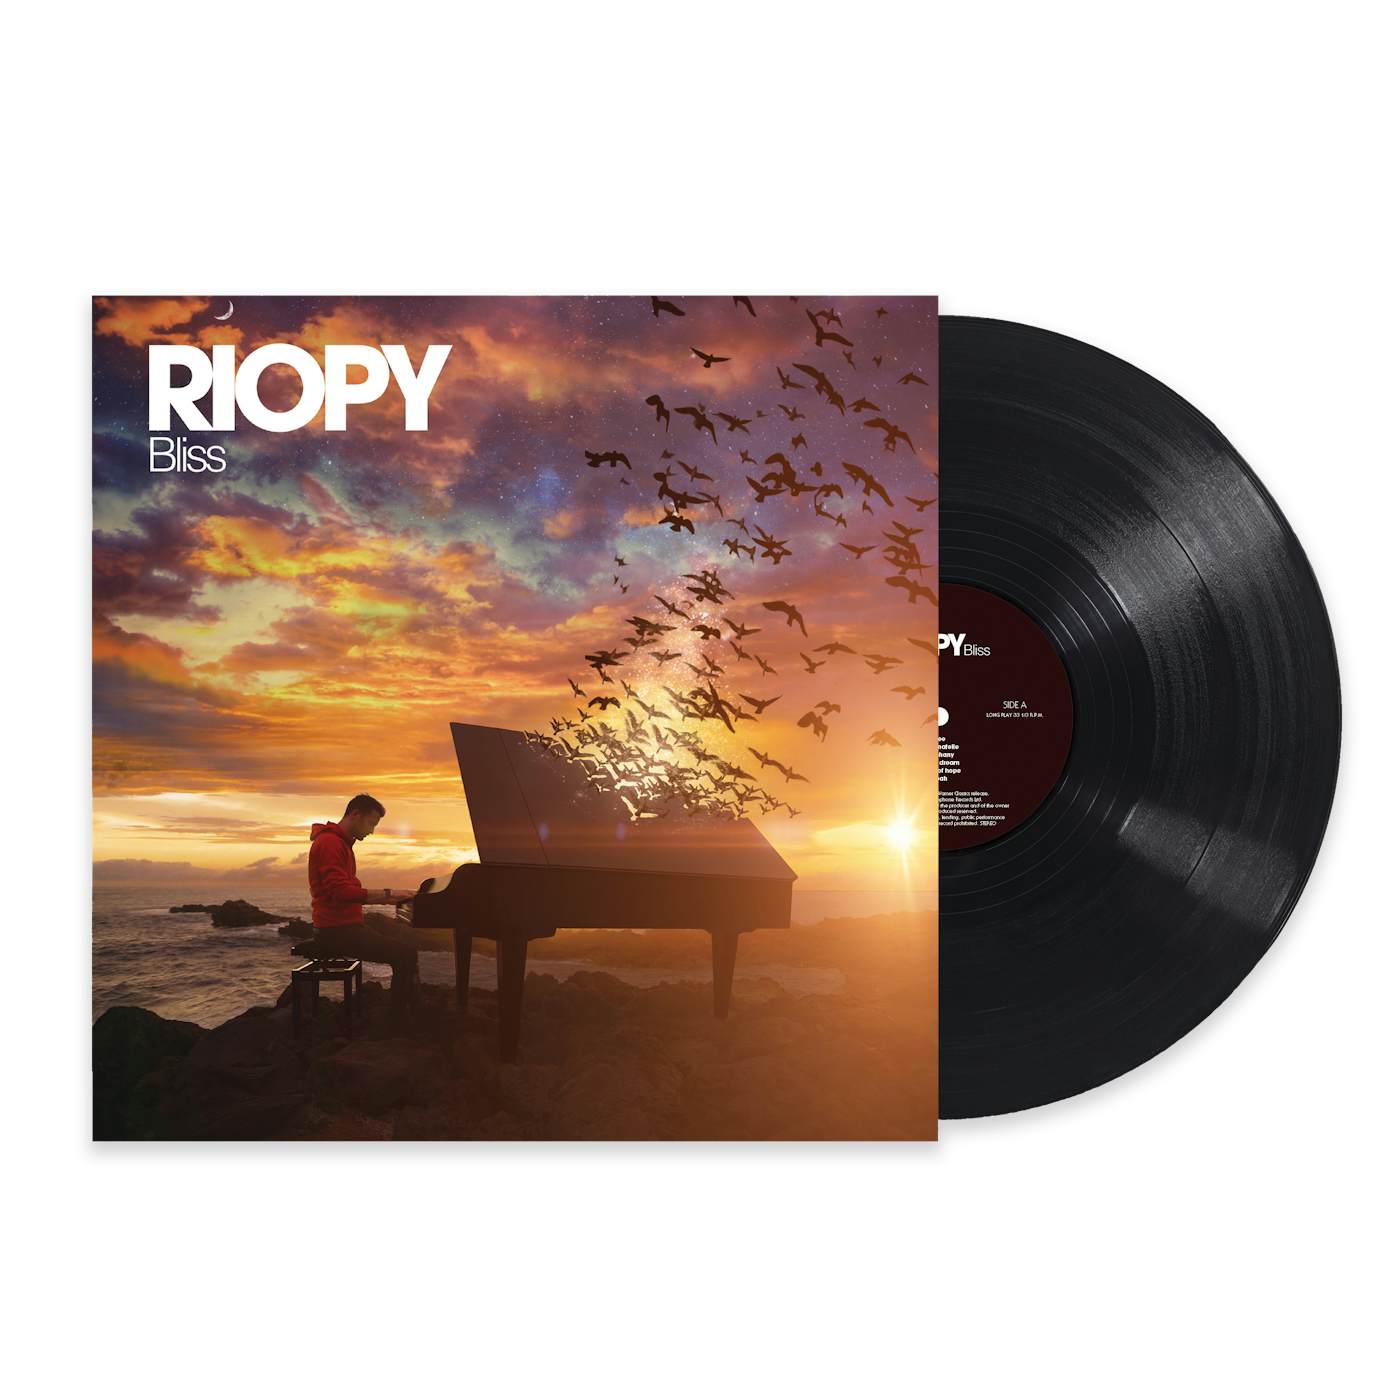 RIOPY Bliss (Signed vinyl)